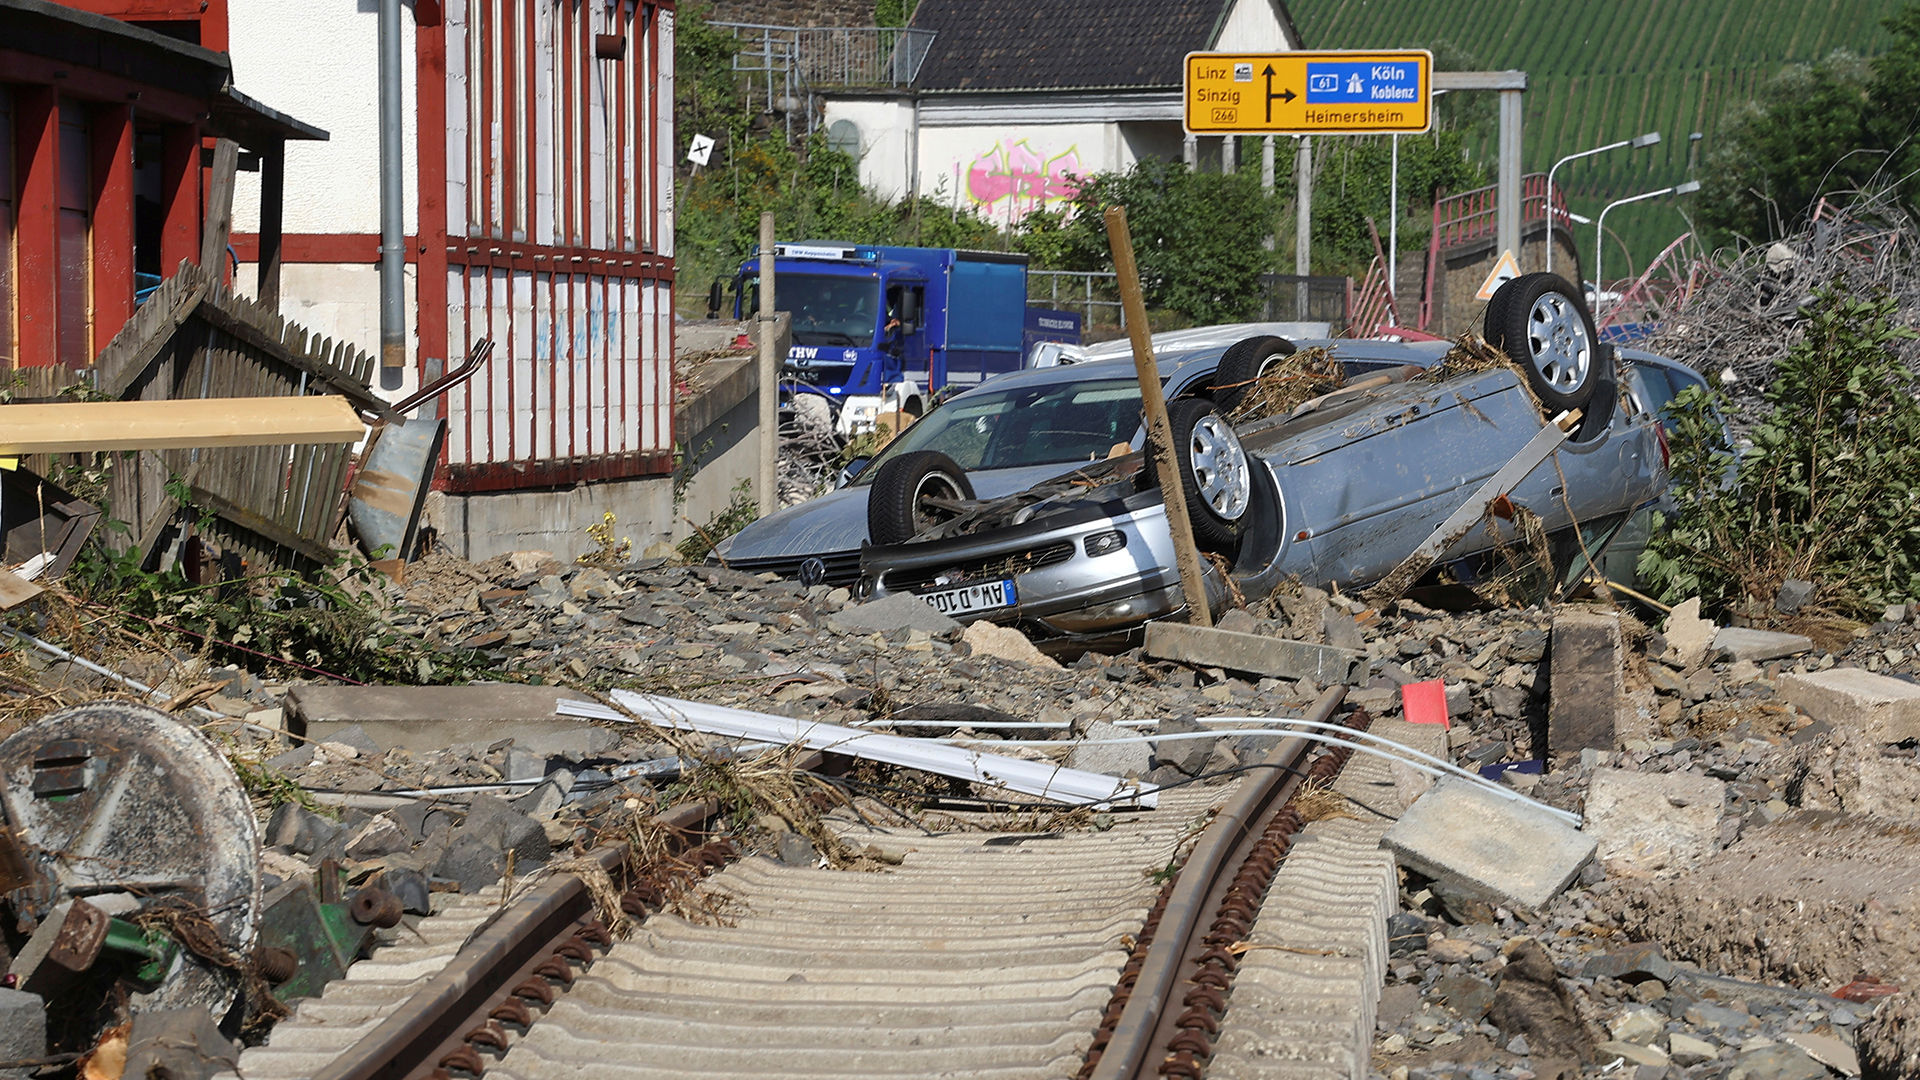 Trümmer und Autowracks sind in Bad Neuenahr-Ahrweiler zu sehen. | REUTERS